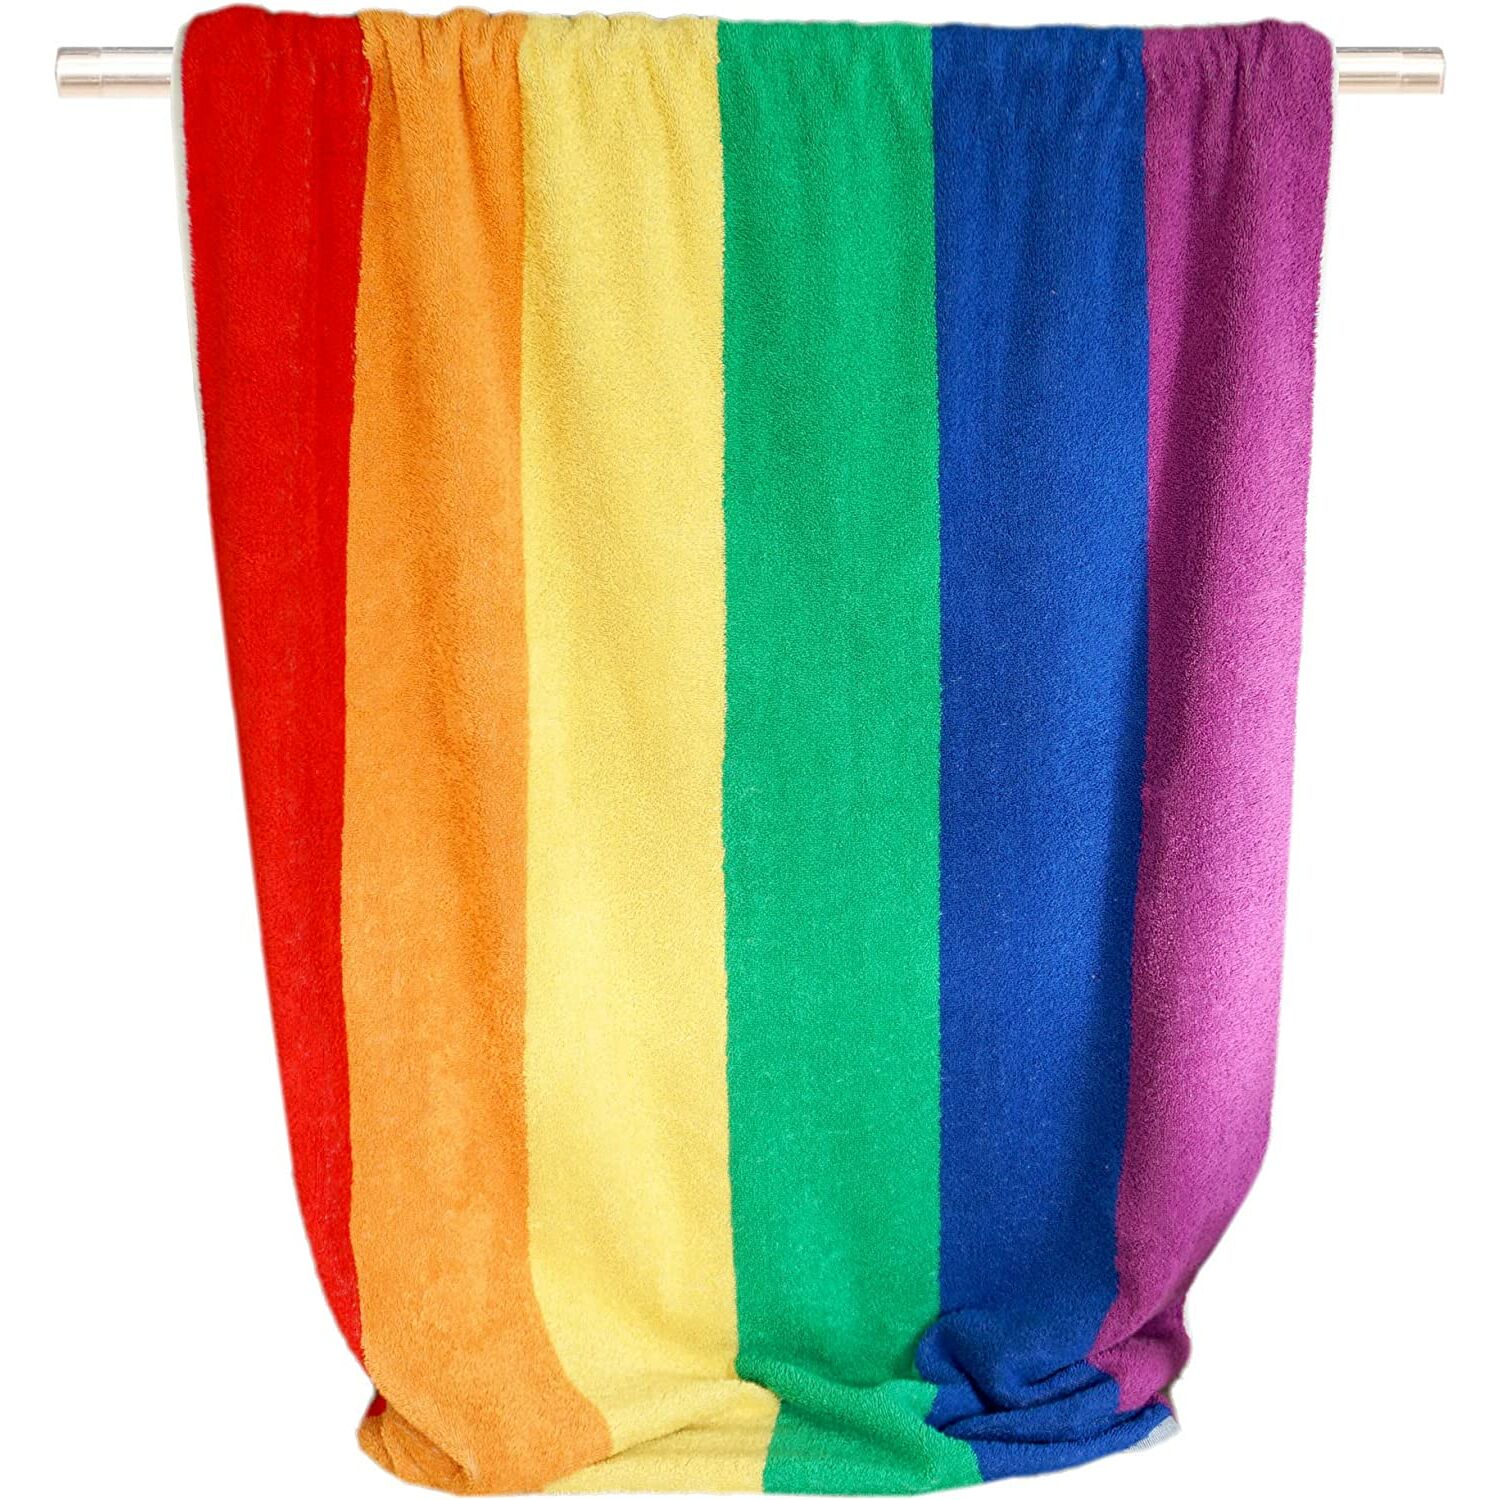 Handtücher :: Buntes Strandtuch mit Regenbogen Streifen, Badetuch 90x180  cm, Handtuch groß Frottee